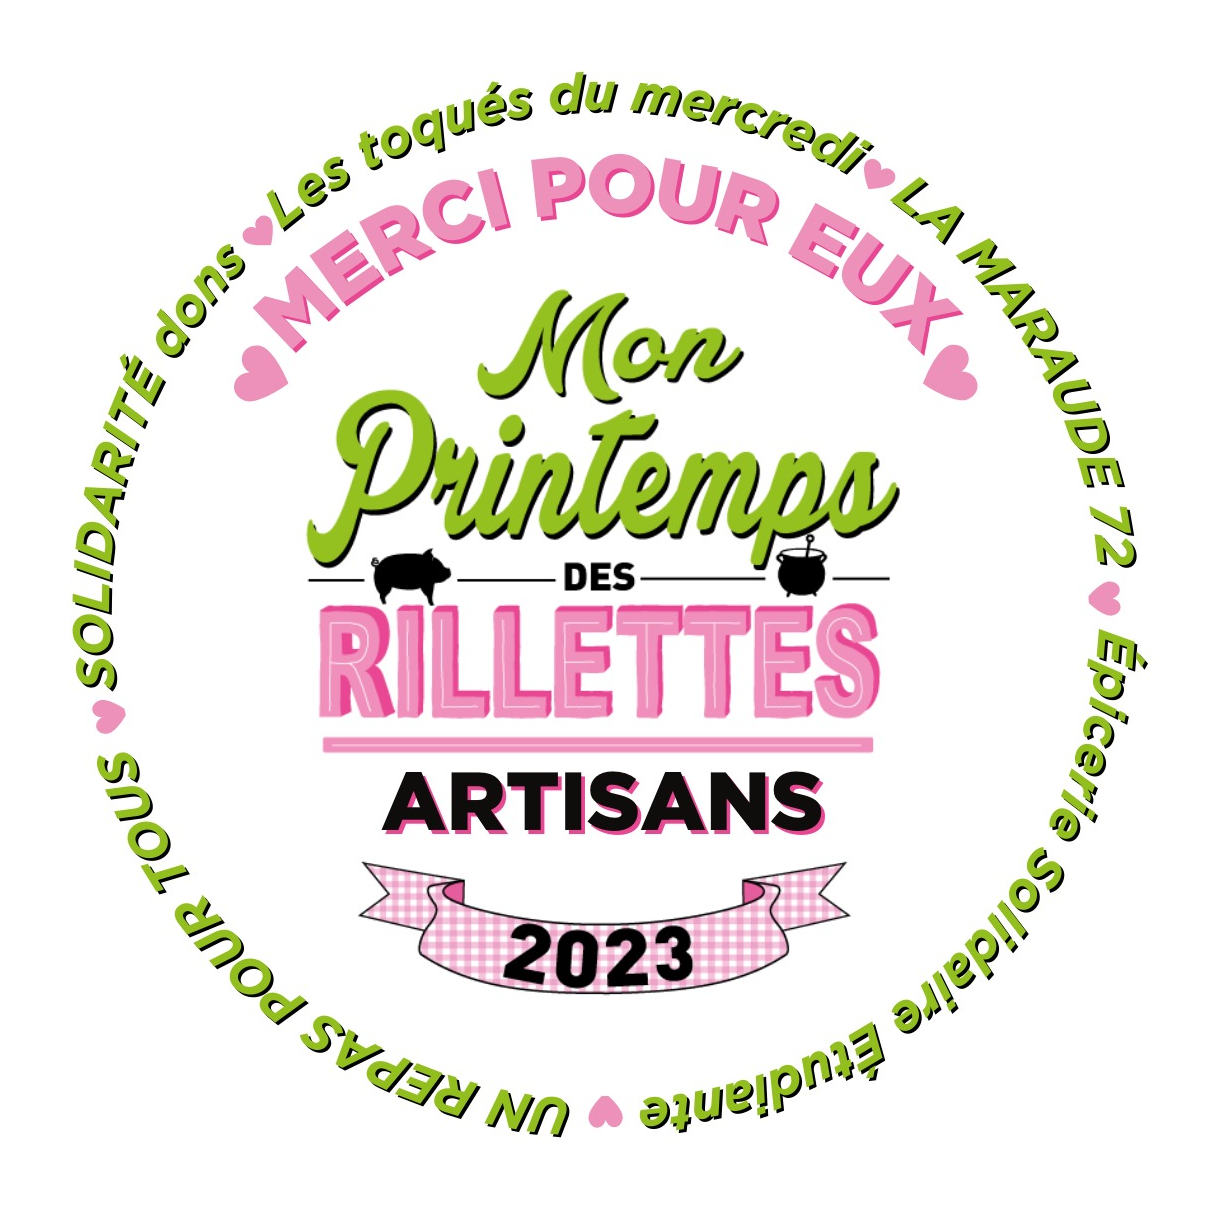 Etiquette Artisans Solidaires du Printemps des Rillettes 2023 : vente de rillettes artisanales et don au profit de 5 associations caritatives.